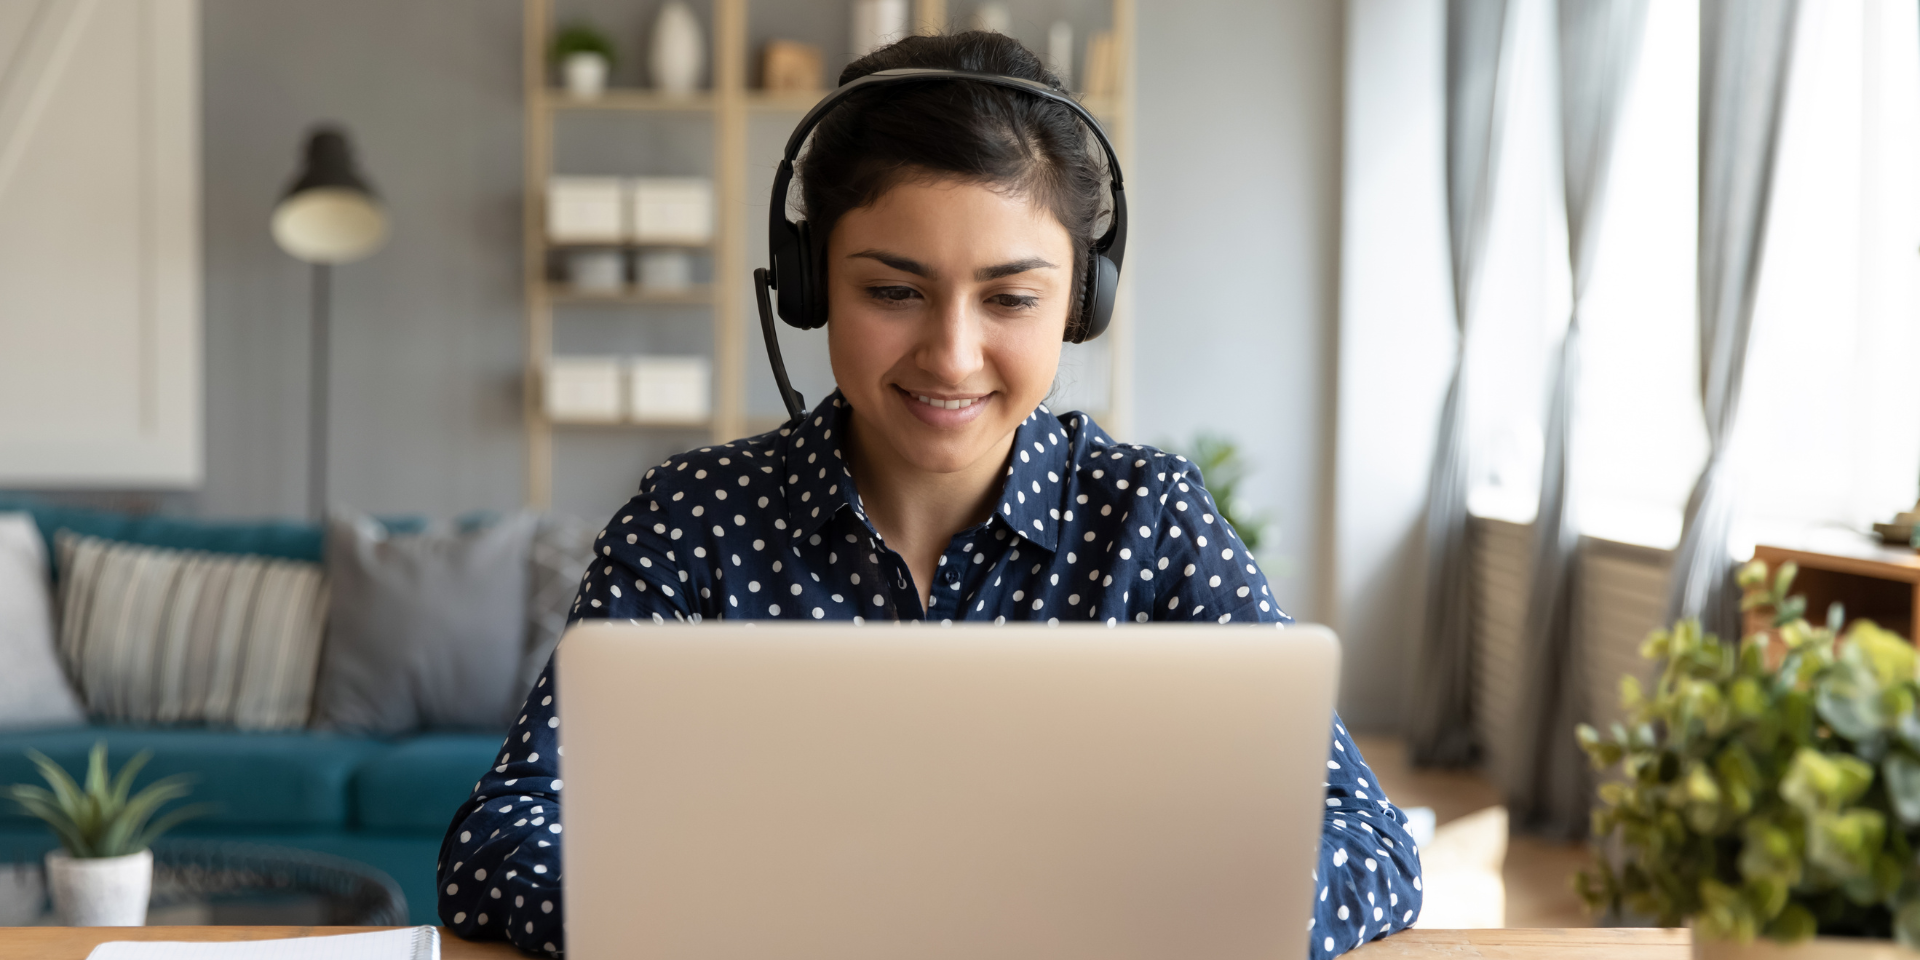 White woman in headset facing laptop smiling